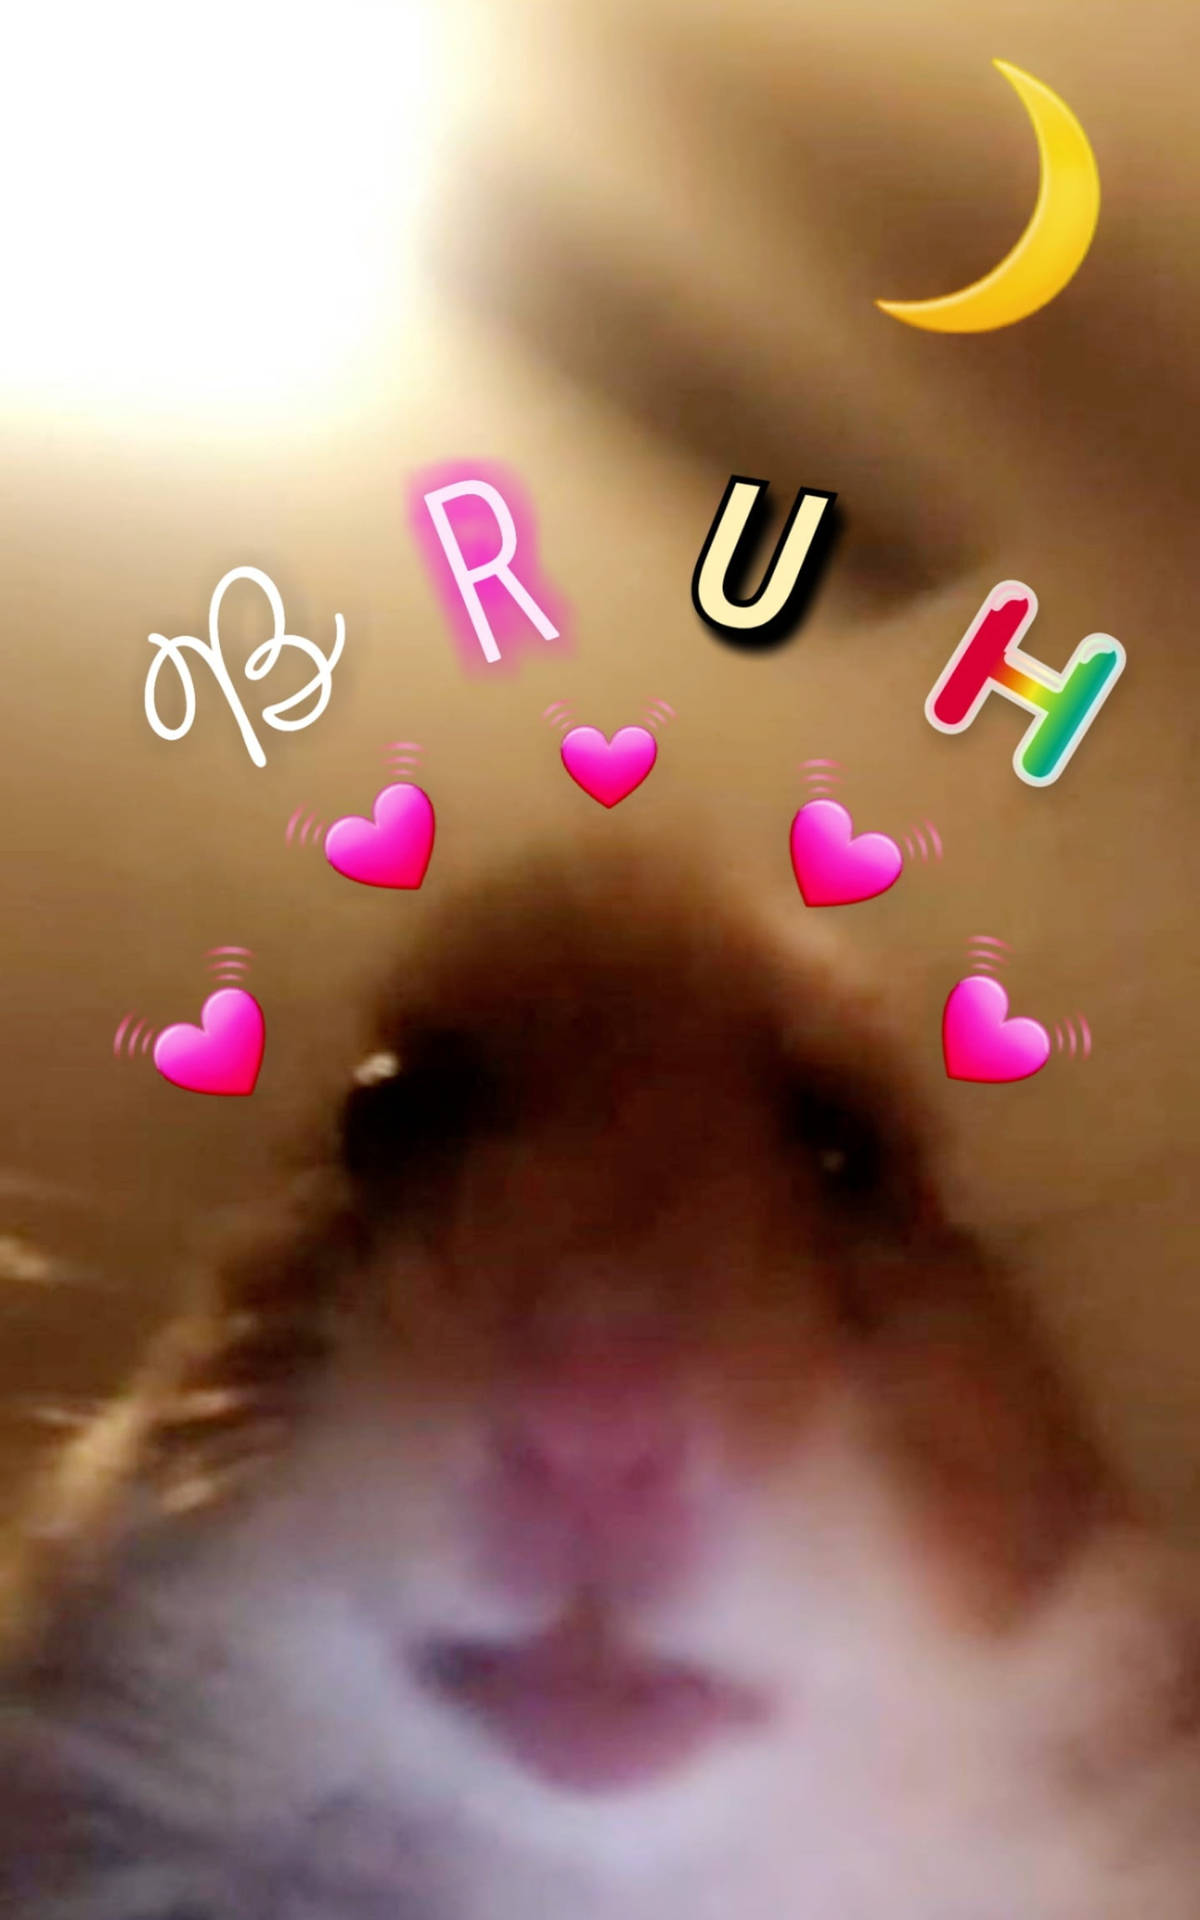 Hamster Bruh Hearts Meme Wallpaper